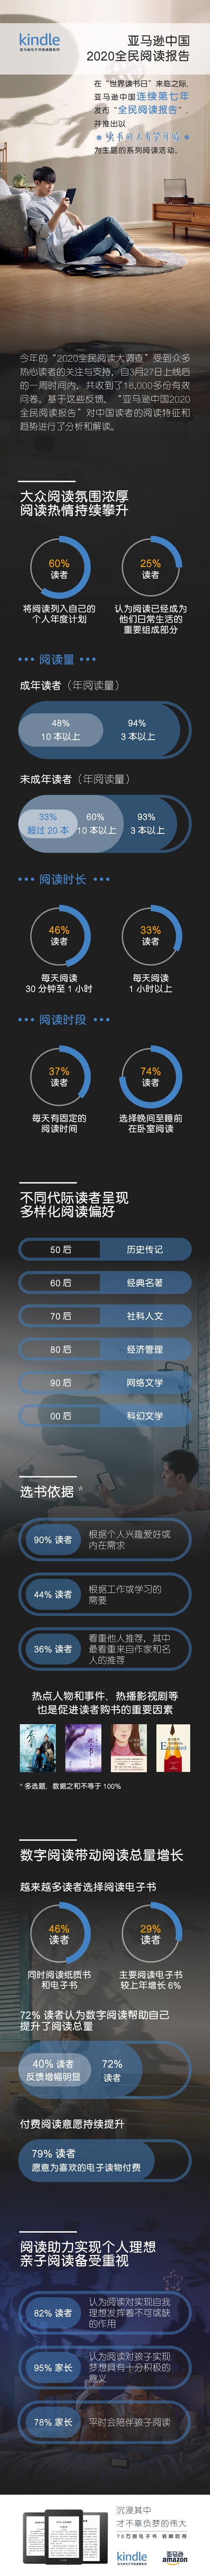 亚马逊中国发布2020年阅读报告 解读中国读者阅读特征与趋势